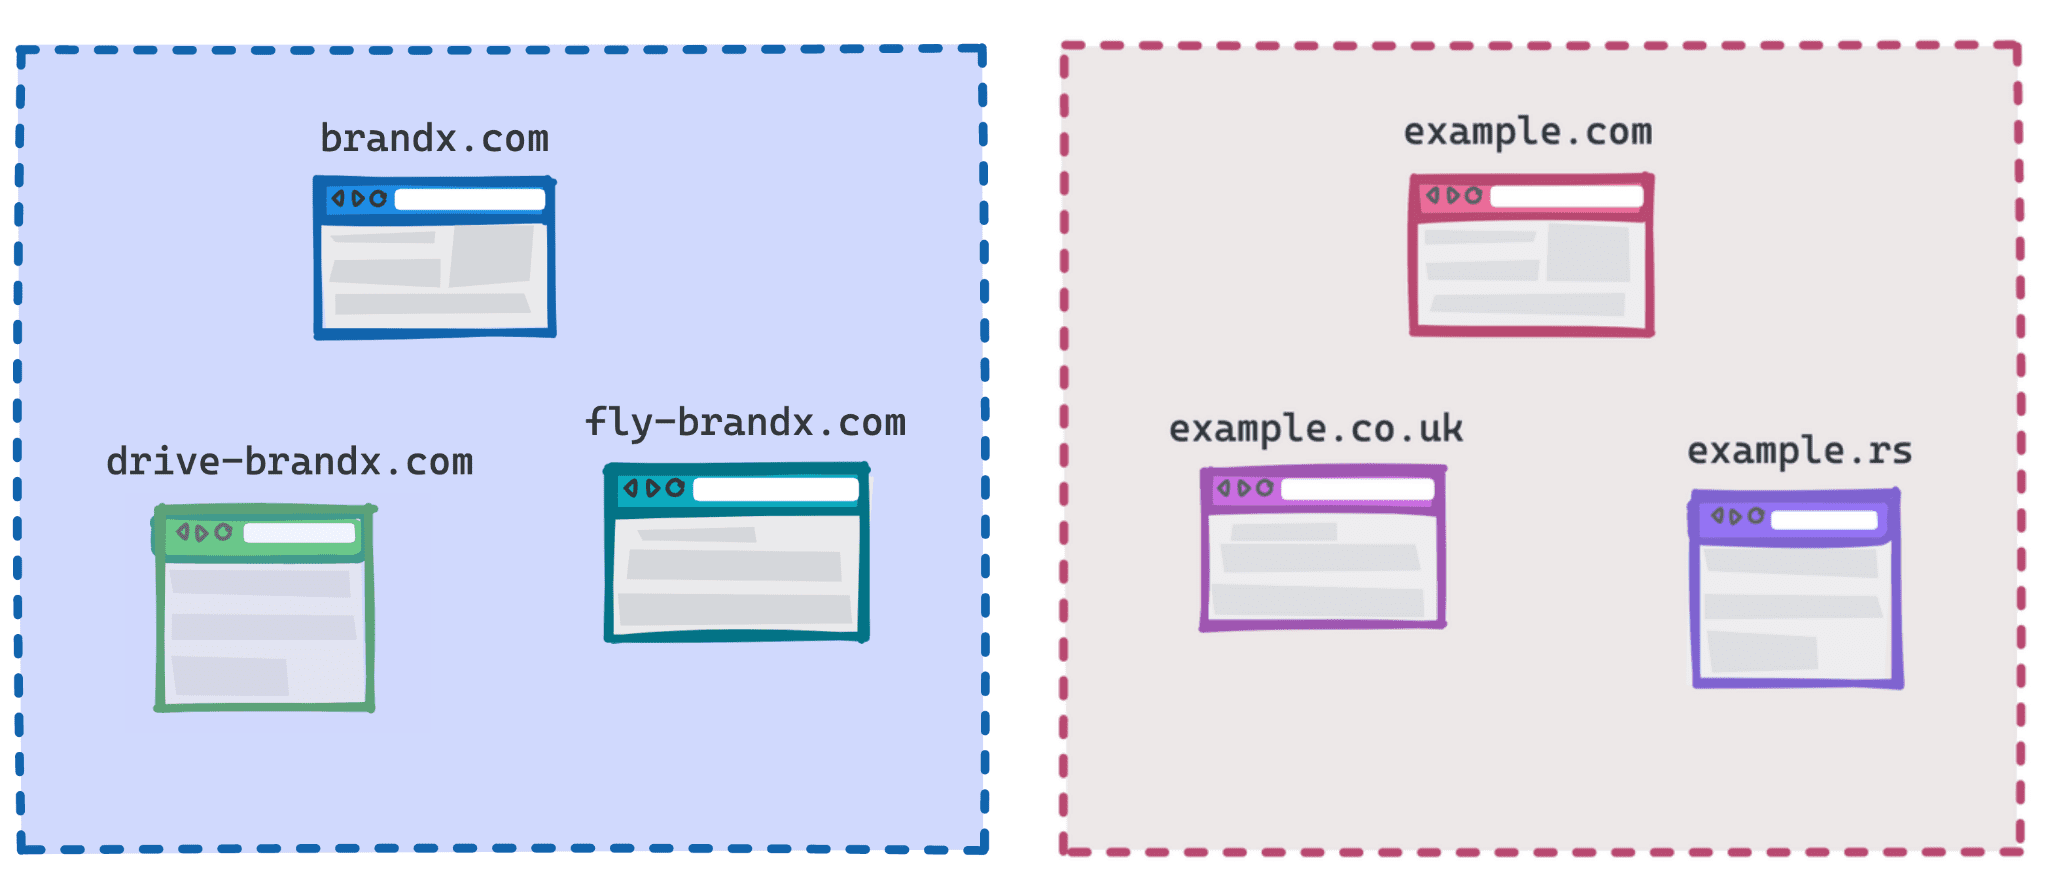 Diagram yang menunjukkan brandx.com, fly-brandx.com, dan drive-brandx.com sebagai satu grup, serta example.com, example.rs, example.co.uk sebagai grup lainnya.